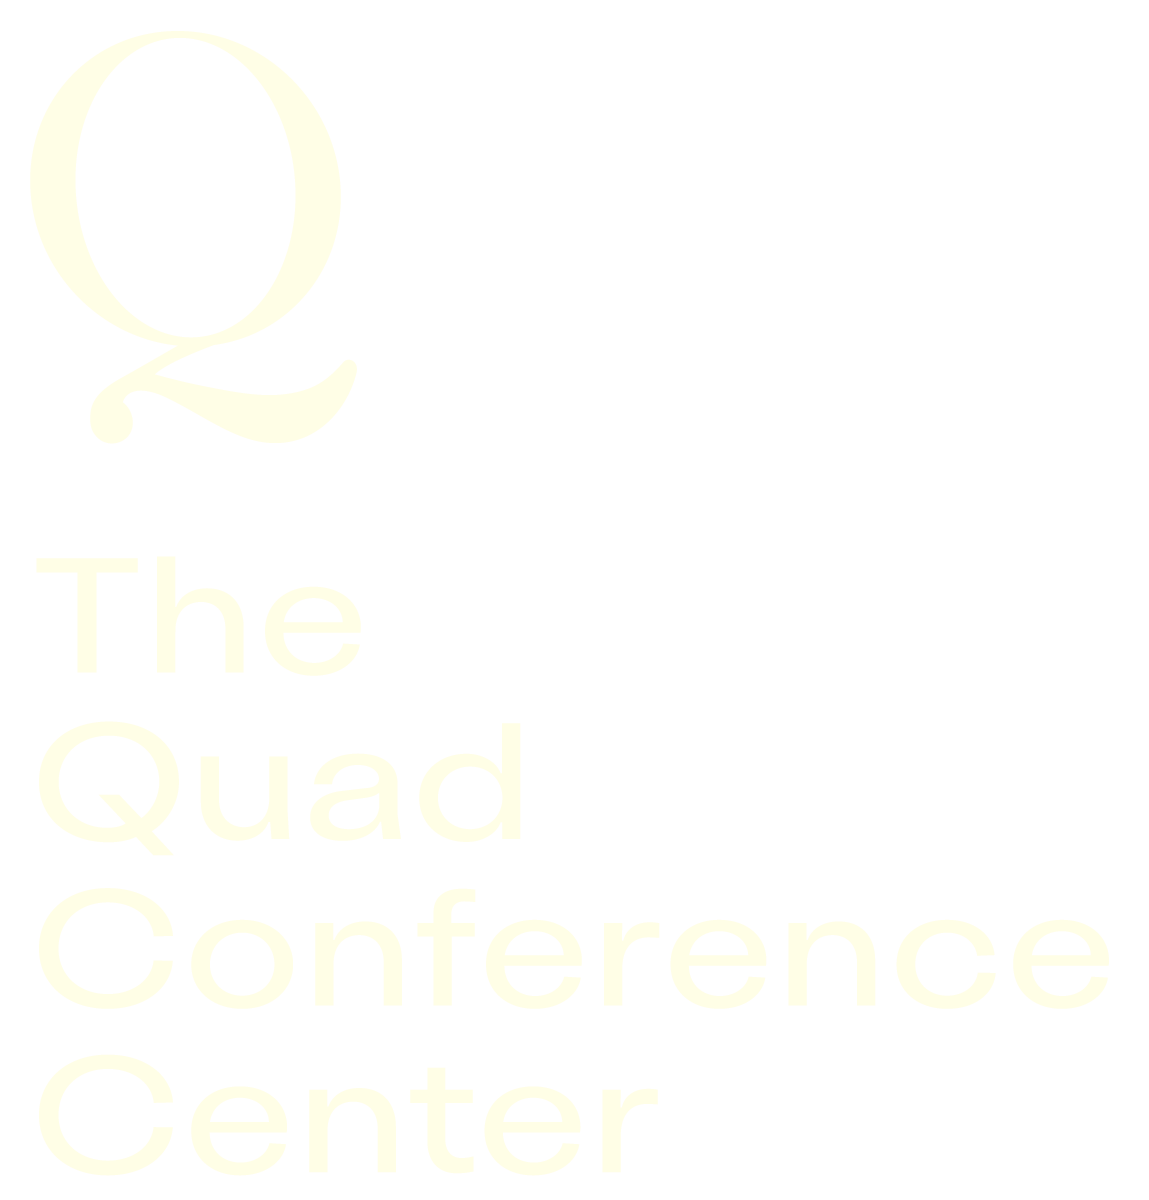 Quad Conference Center logo